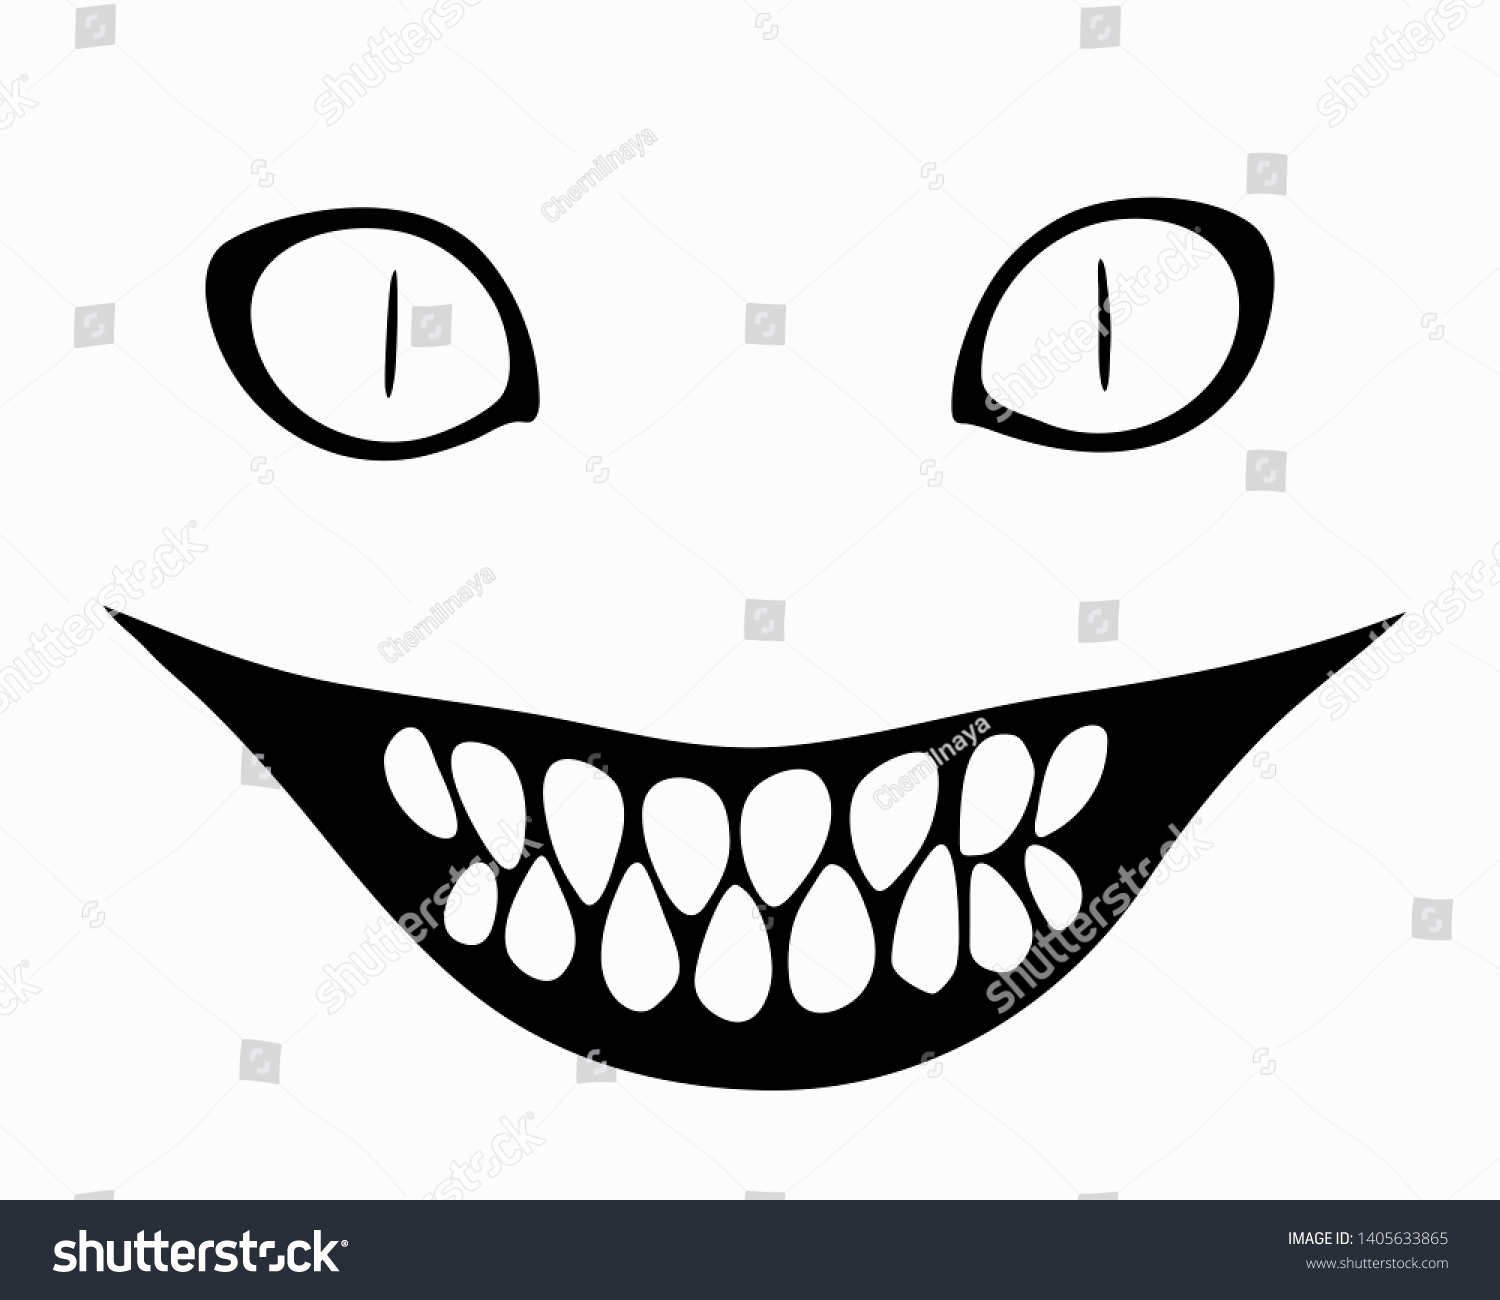 Нарисованная улыбка с острыми зубами